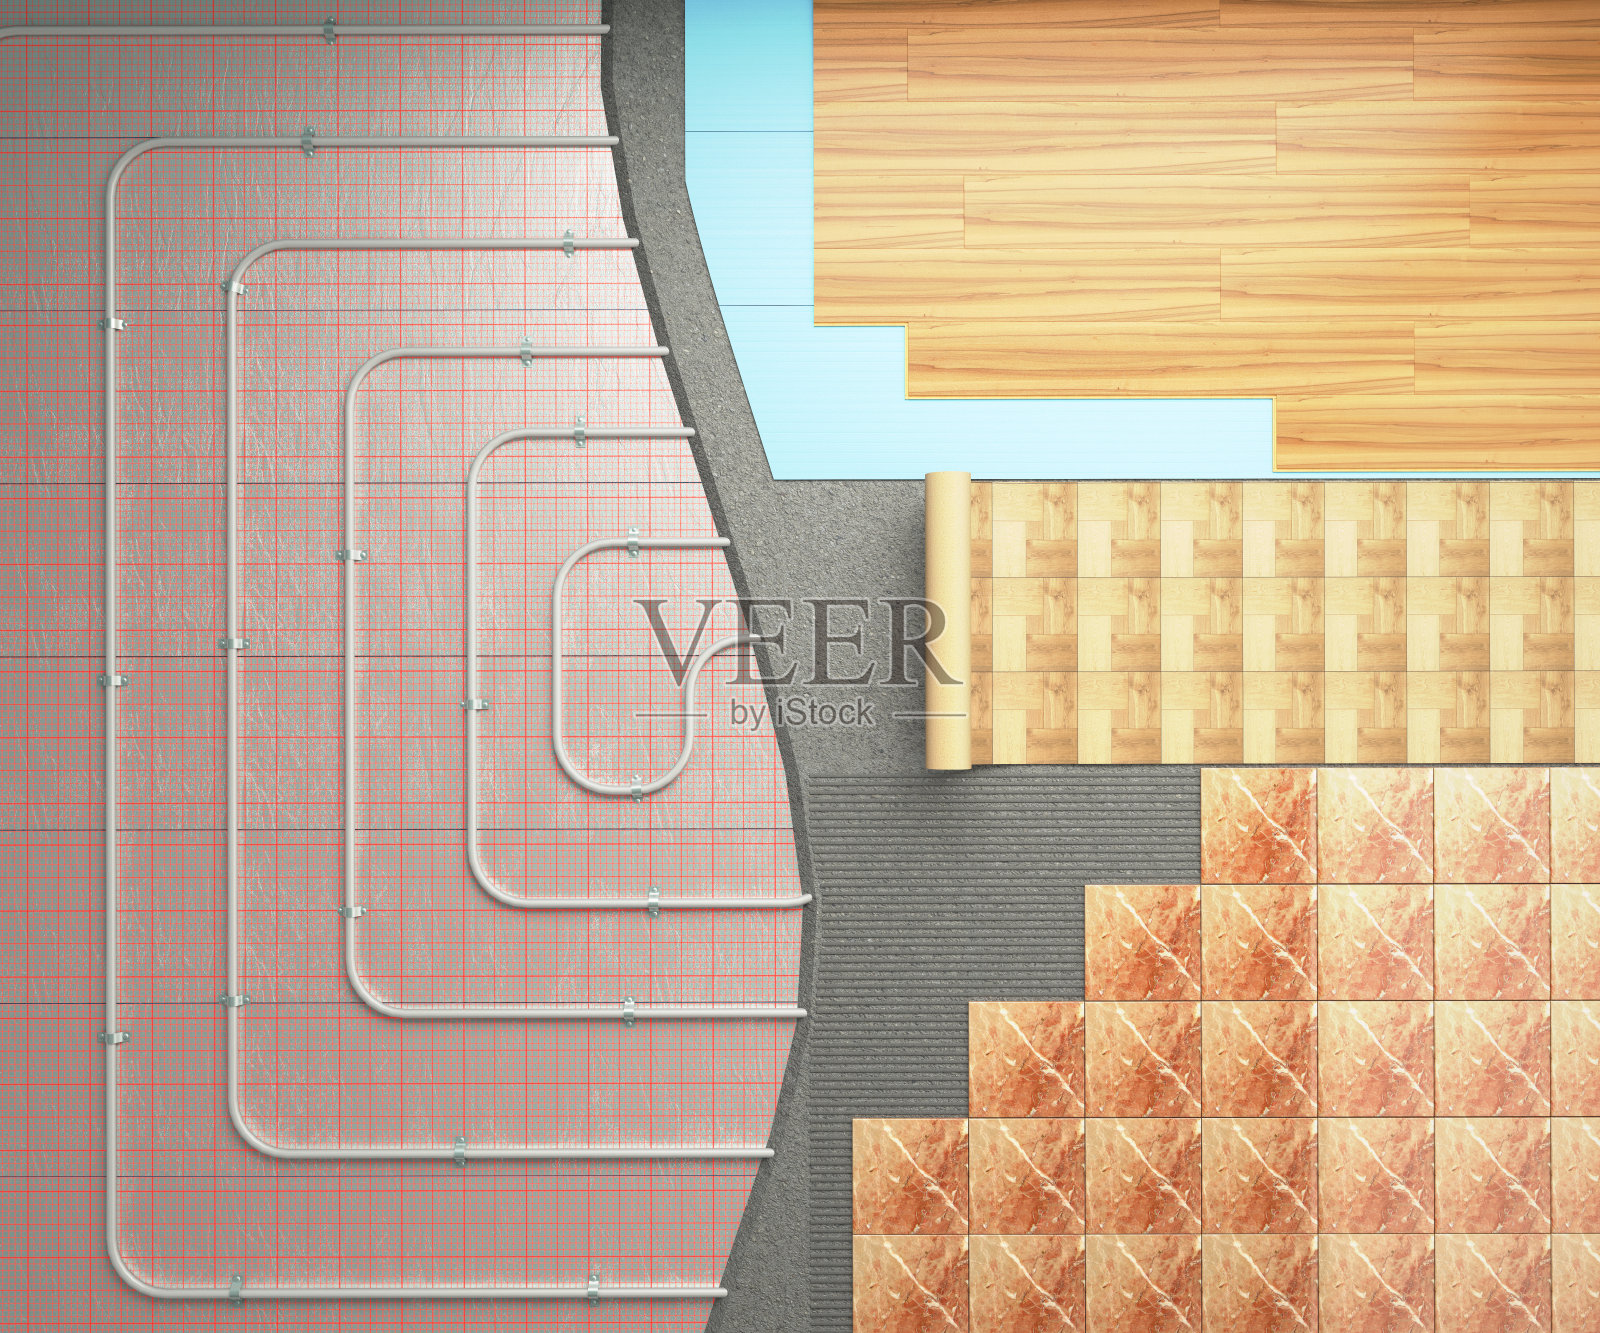 暖地板的概念采暖系统铺设在地板上，采用不同的装饰涂料3d渲染照片摄影图片